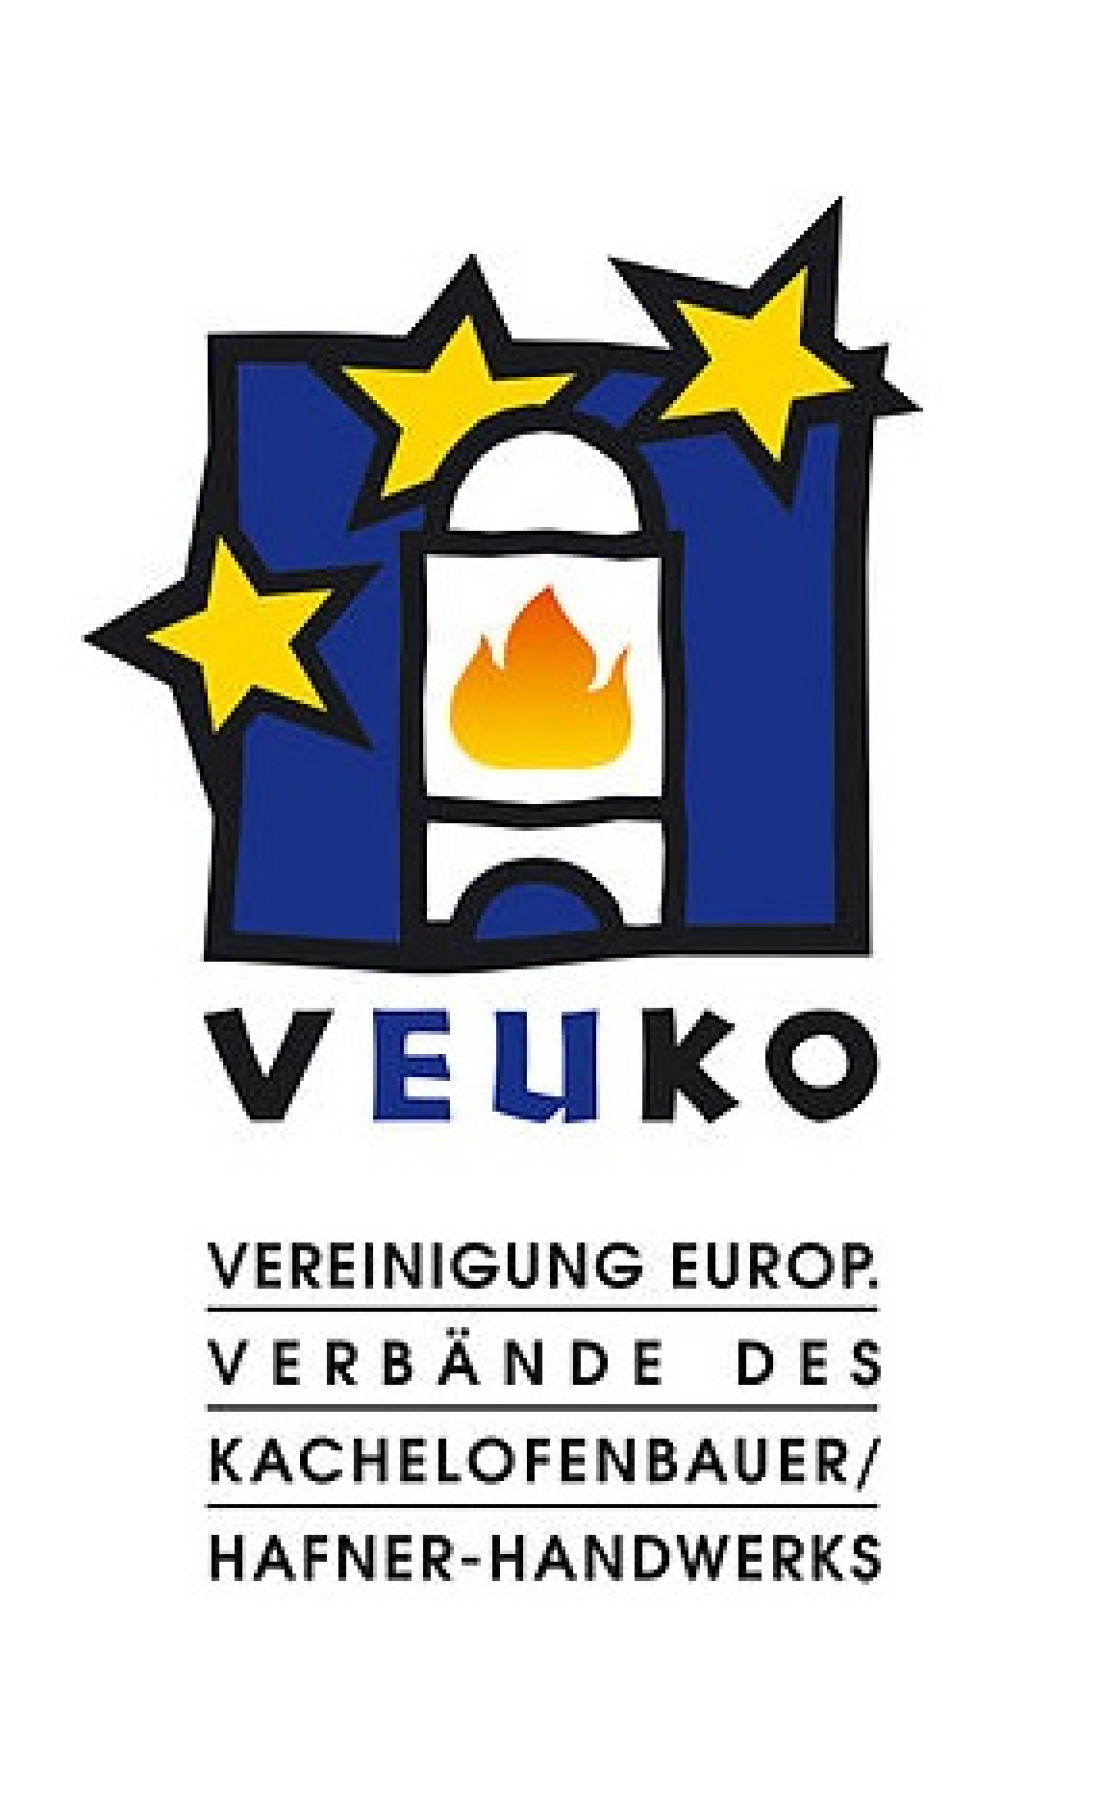 Kongres VEUKO dla branży zduńskiej odbędzie się w maju - informuje firma Cebud